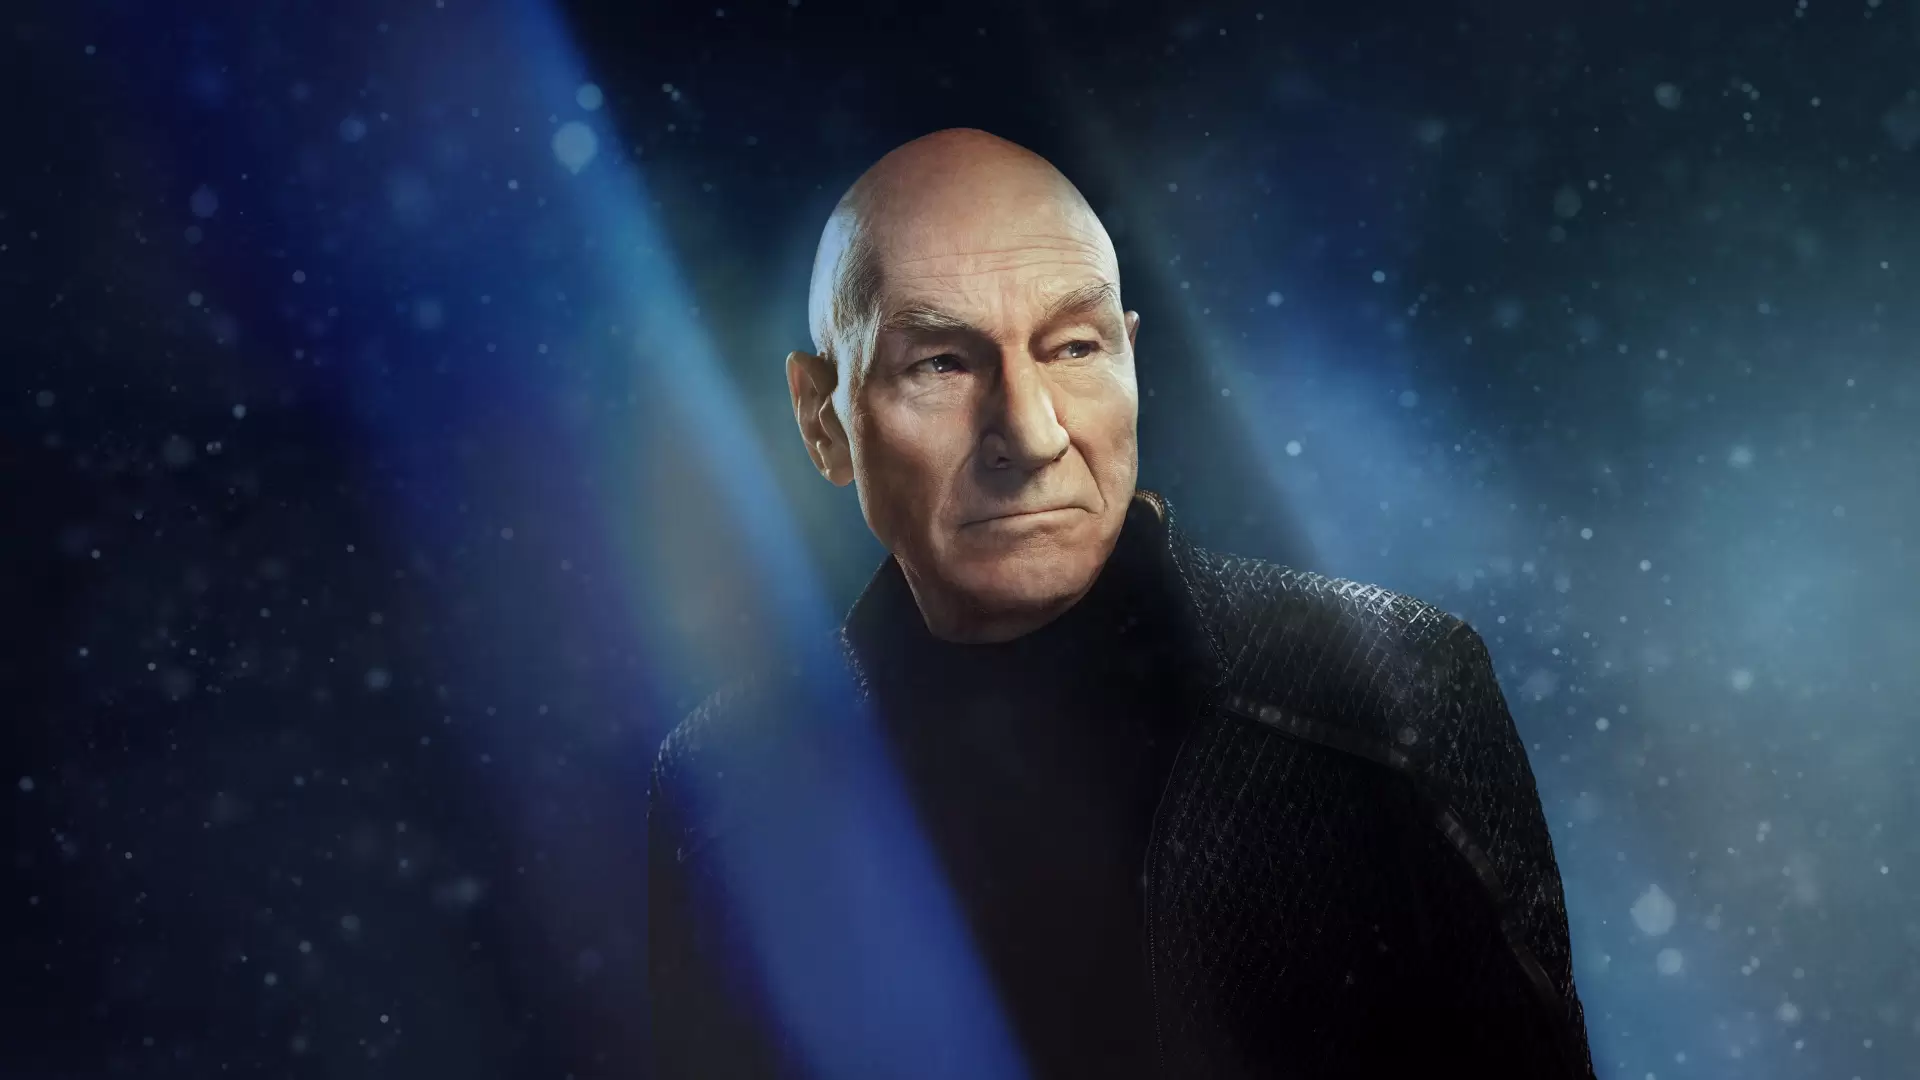 دانلود سریال Star Trek: Picard 2019 (پیشتازان فضا: پیکارد) با زیرنویس فارسی و تماشای آنلاین